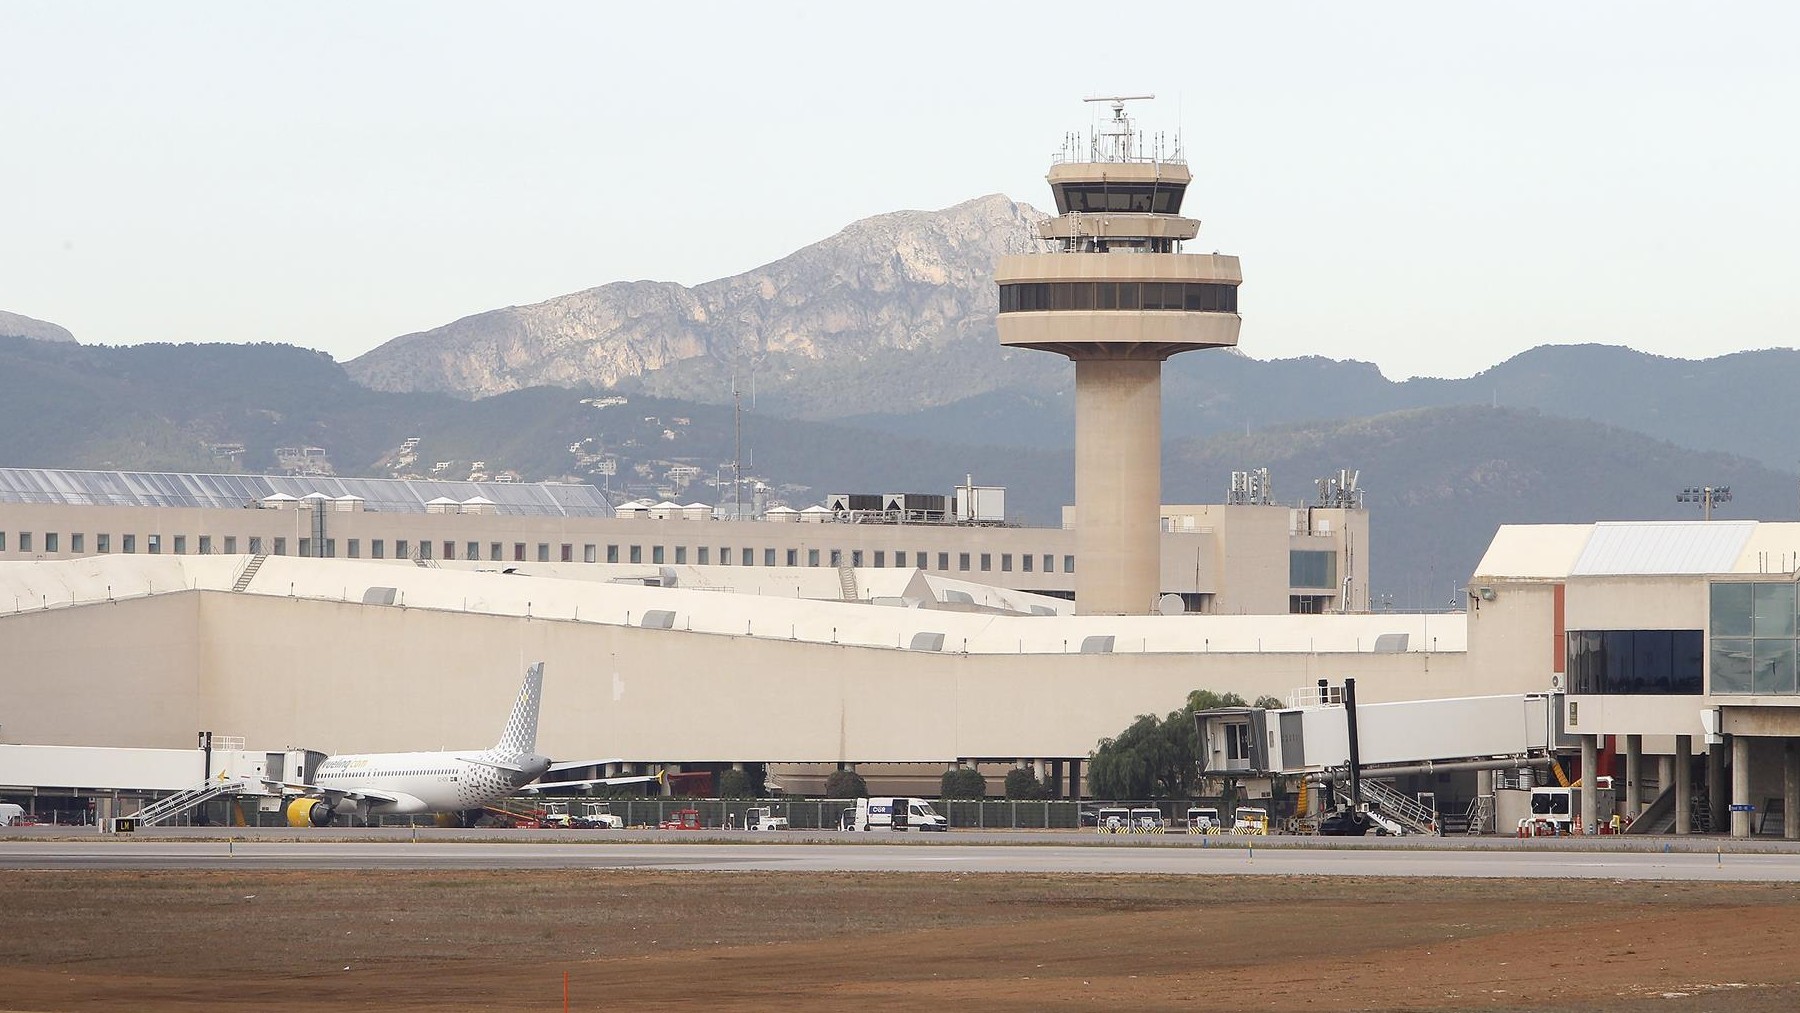 Vista general del aeropuerto de Palma.